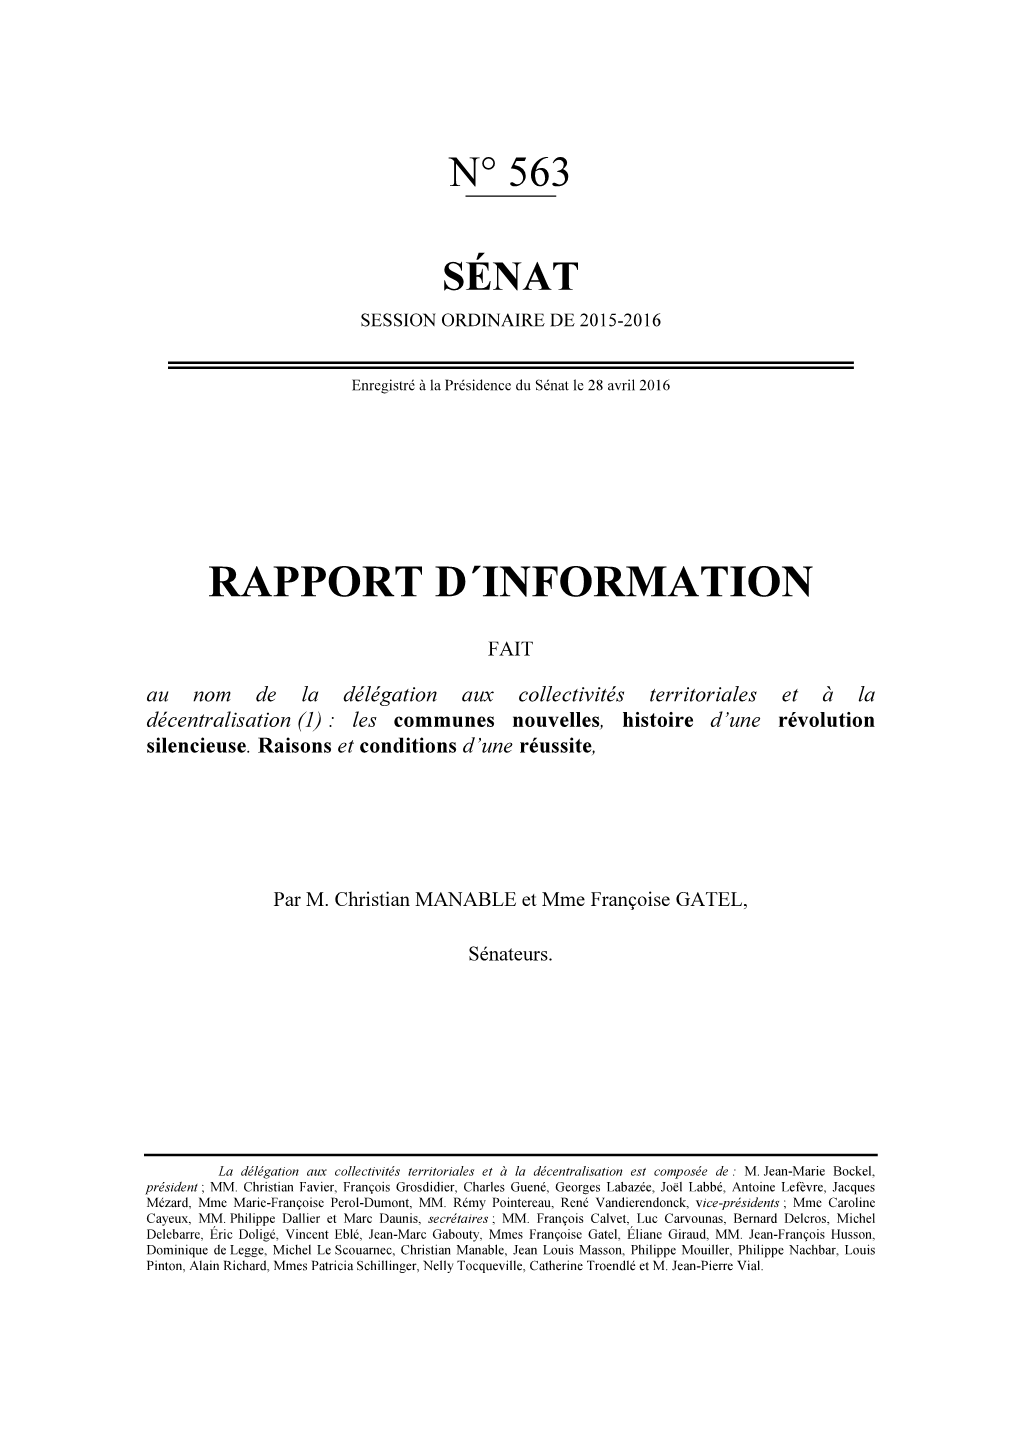 Rapport Senatorial Communes Nouvelles